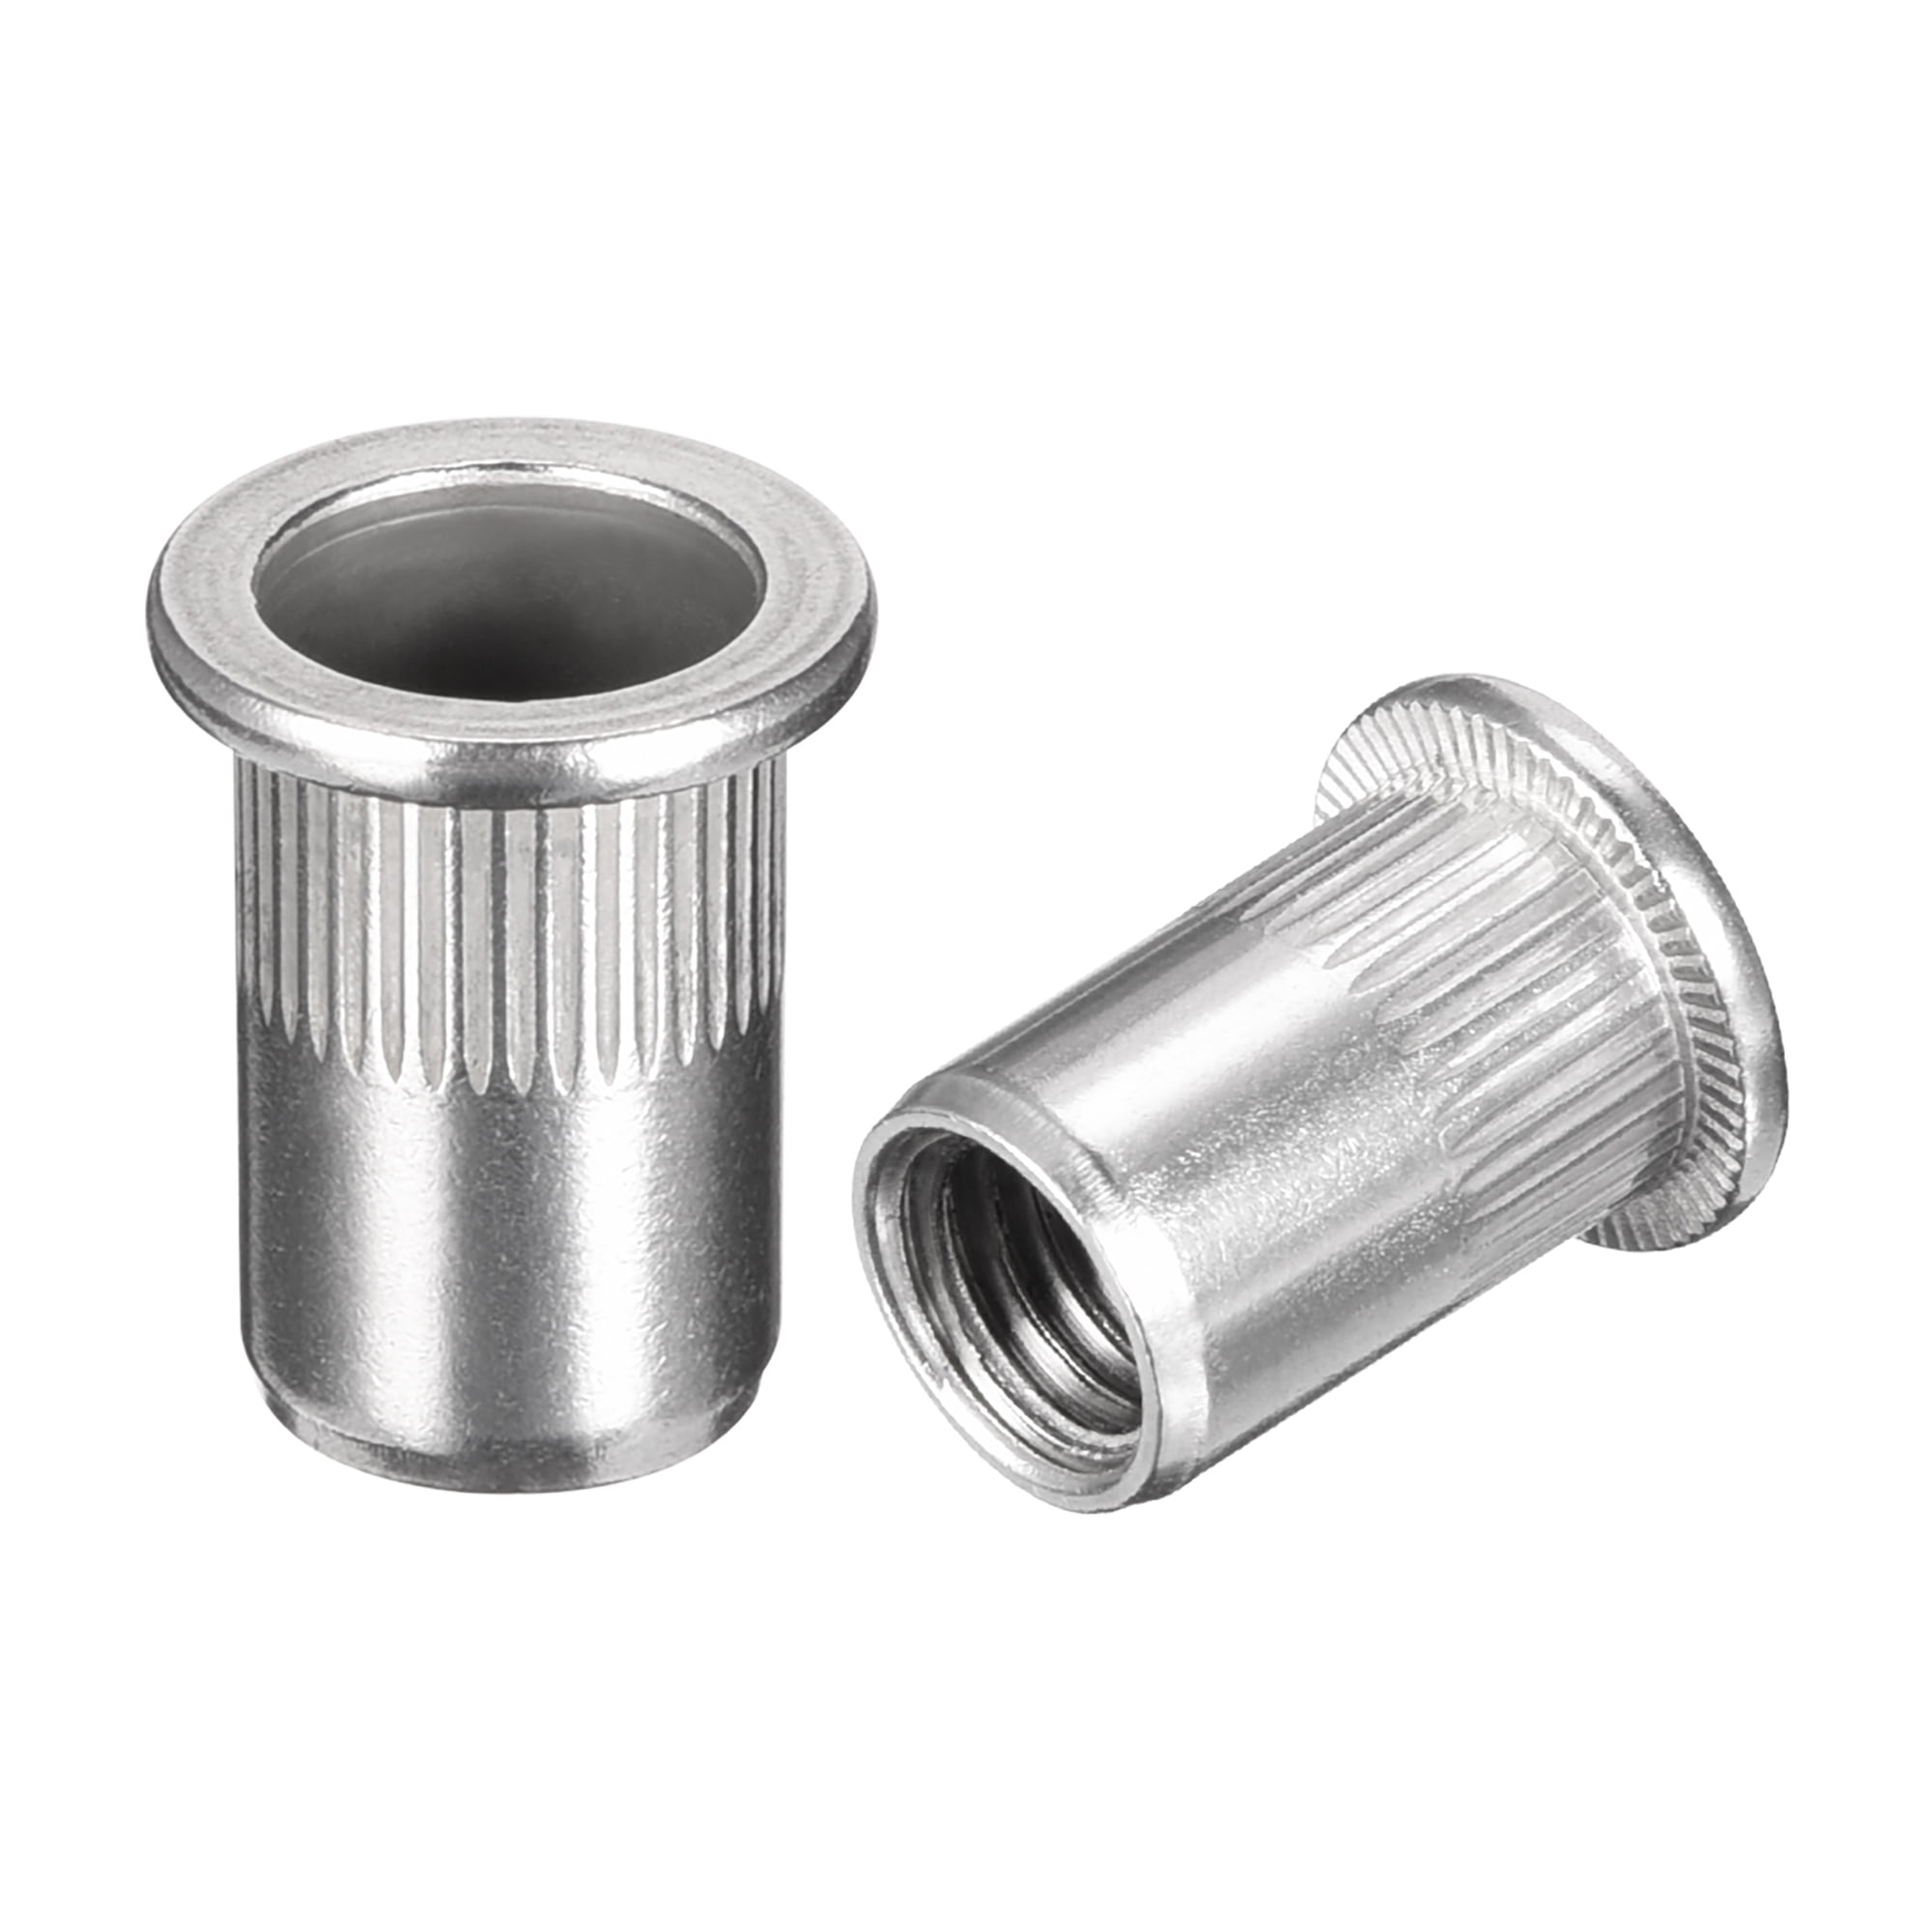 10 3/8-16 Zinc Steel Rivet Nut or Nut Settter 